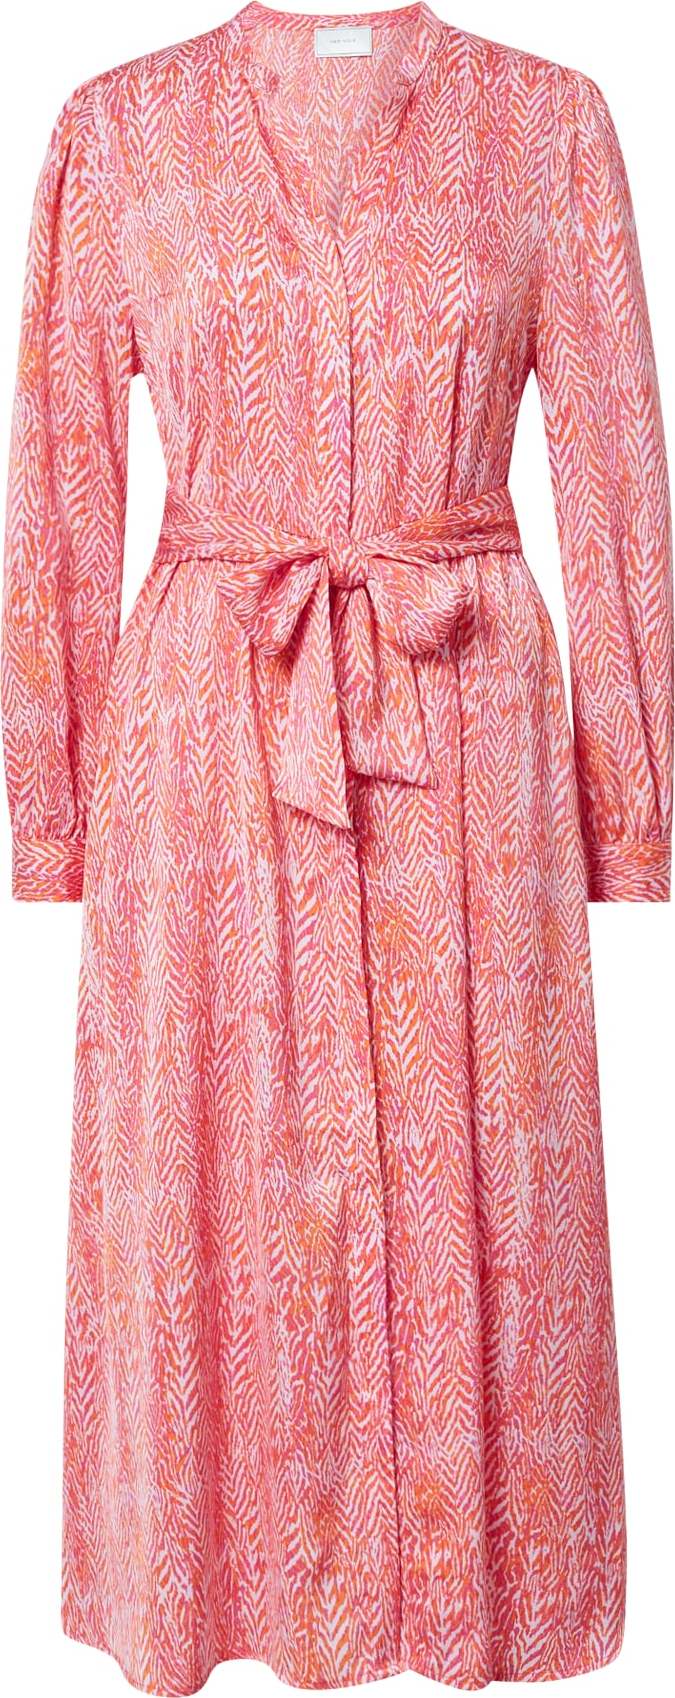 Neo Noir Košilové šaty 'Cilian' oranžová / pink / pitaya / bílá